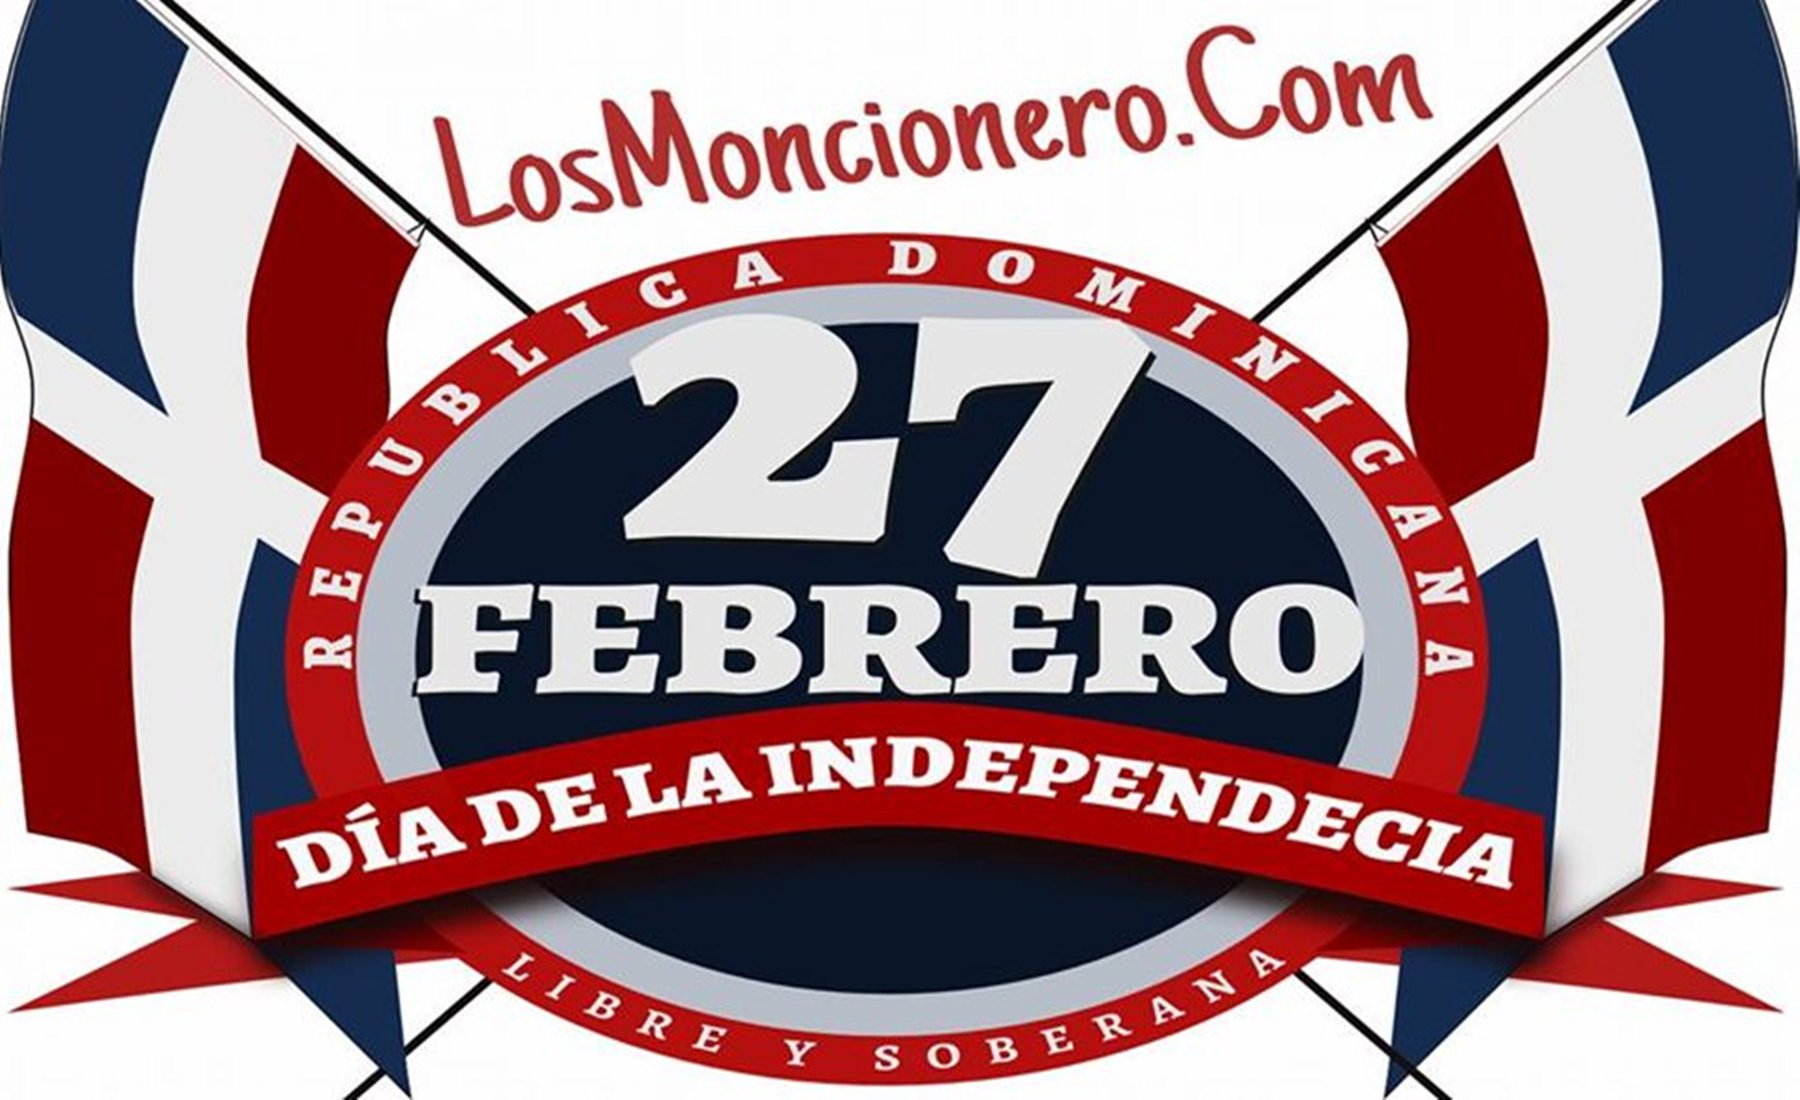 El 27 de febrero es el día de la Independencia Nacional de la República Dominicana